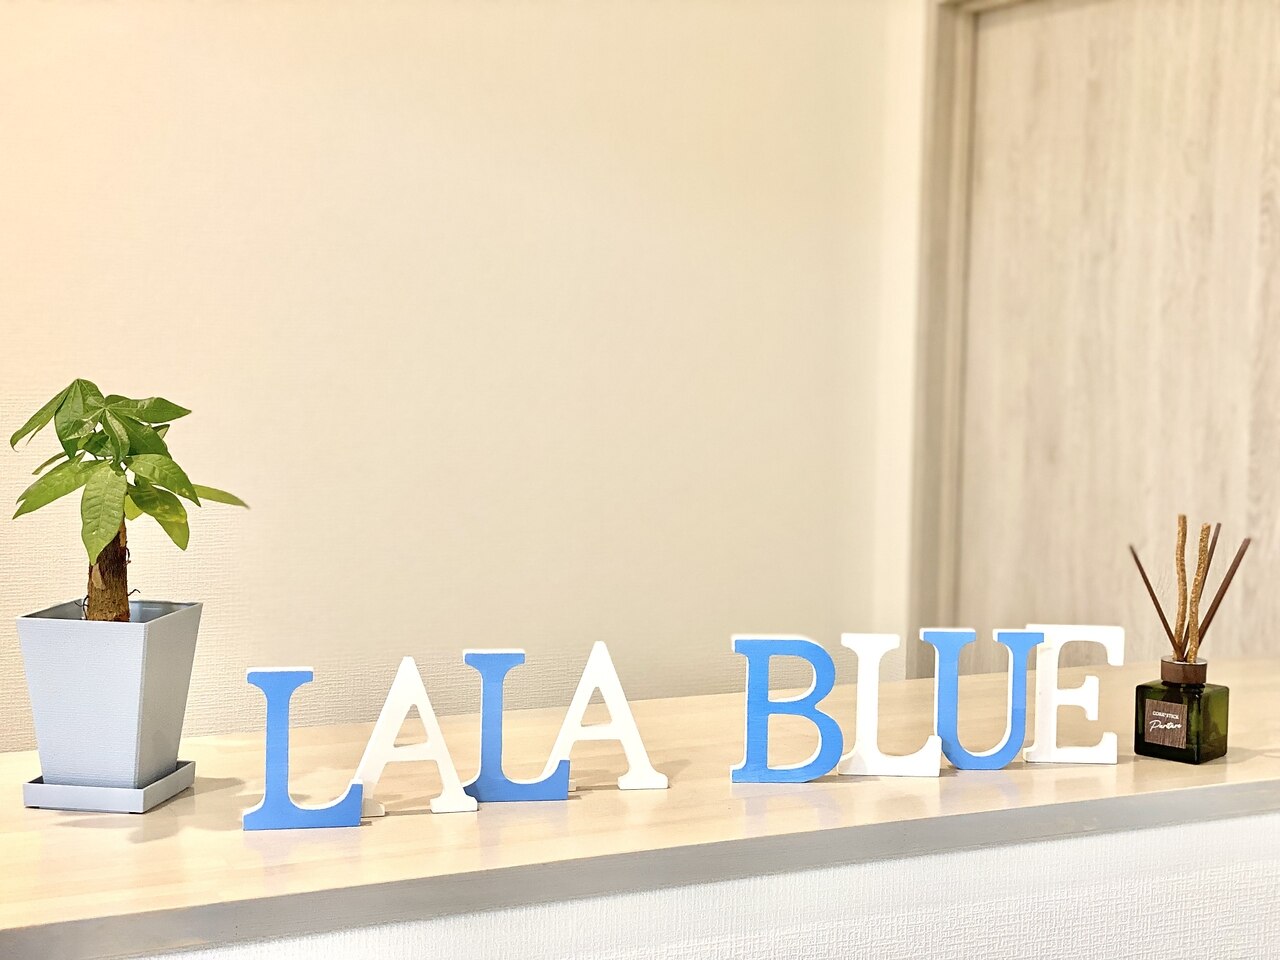 ララブルー(Lala blue)の紹介画像